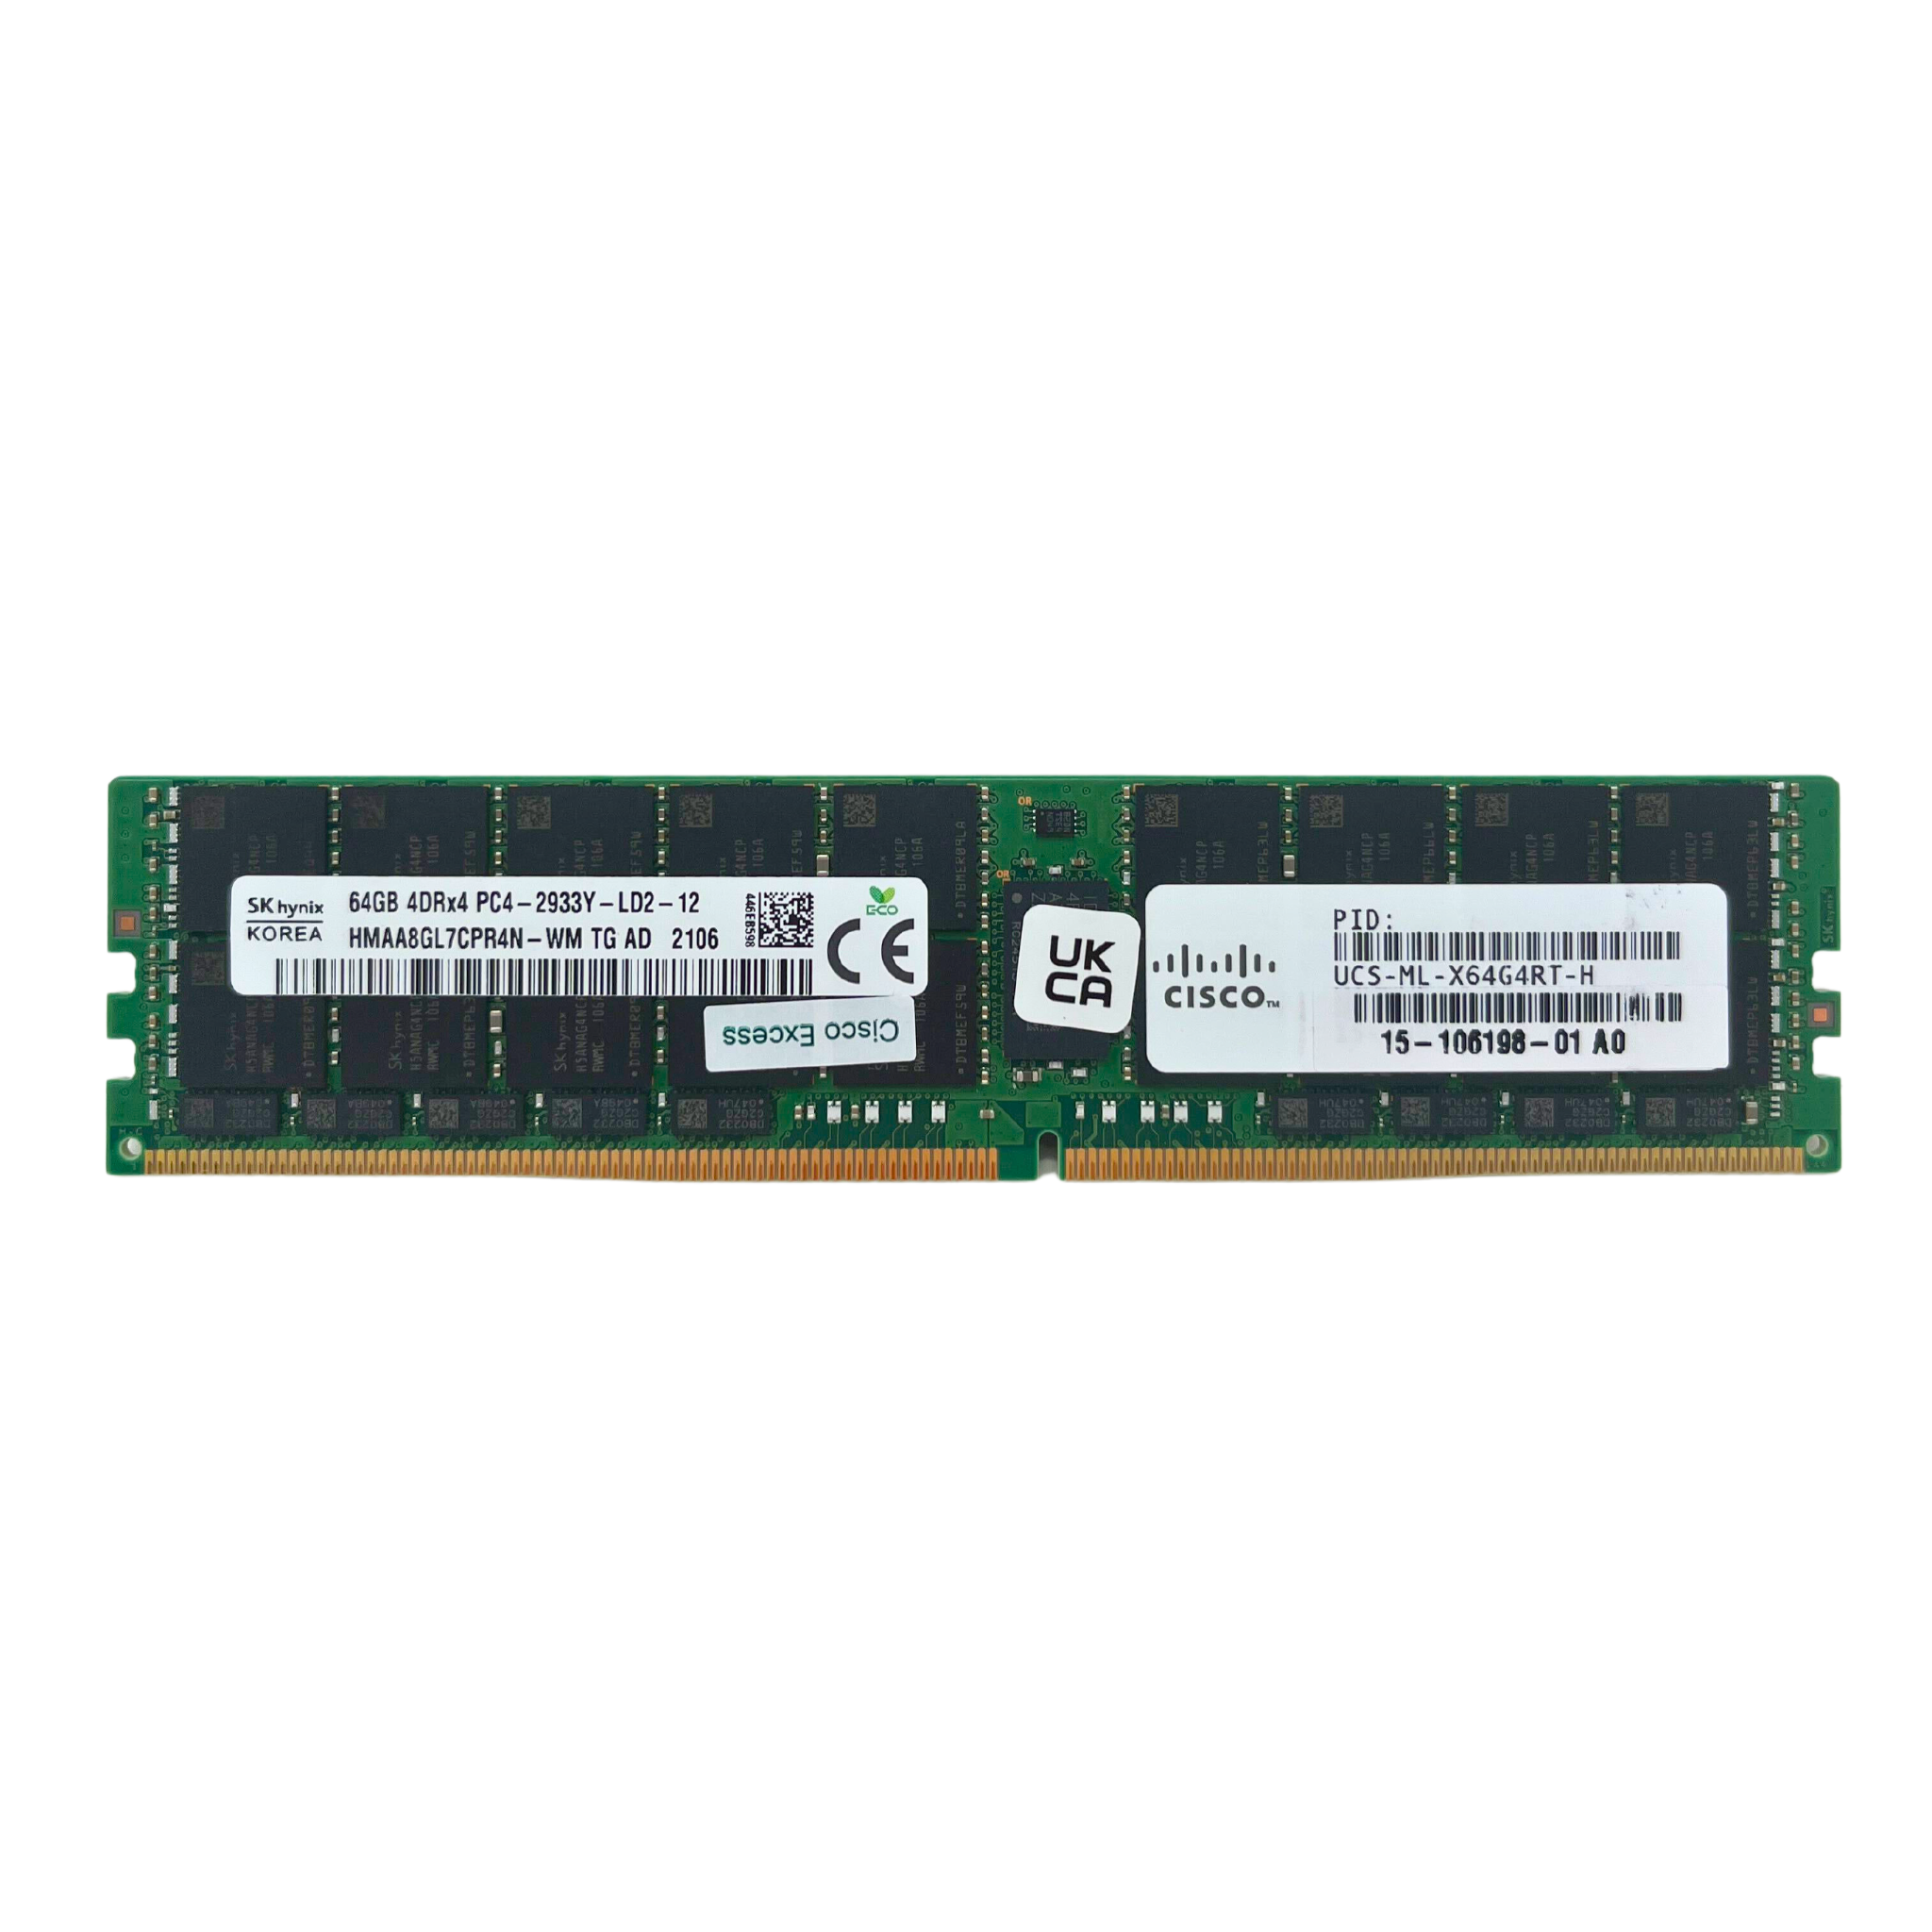 Cisco 64GB 4DRX4 PC4-2933Y  ECC  Registered  LRDIMM Memory  (HMAA8GL7CPR4N-WM TG AD-CISCO)